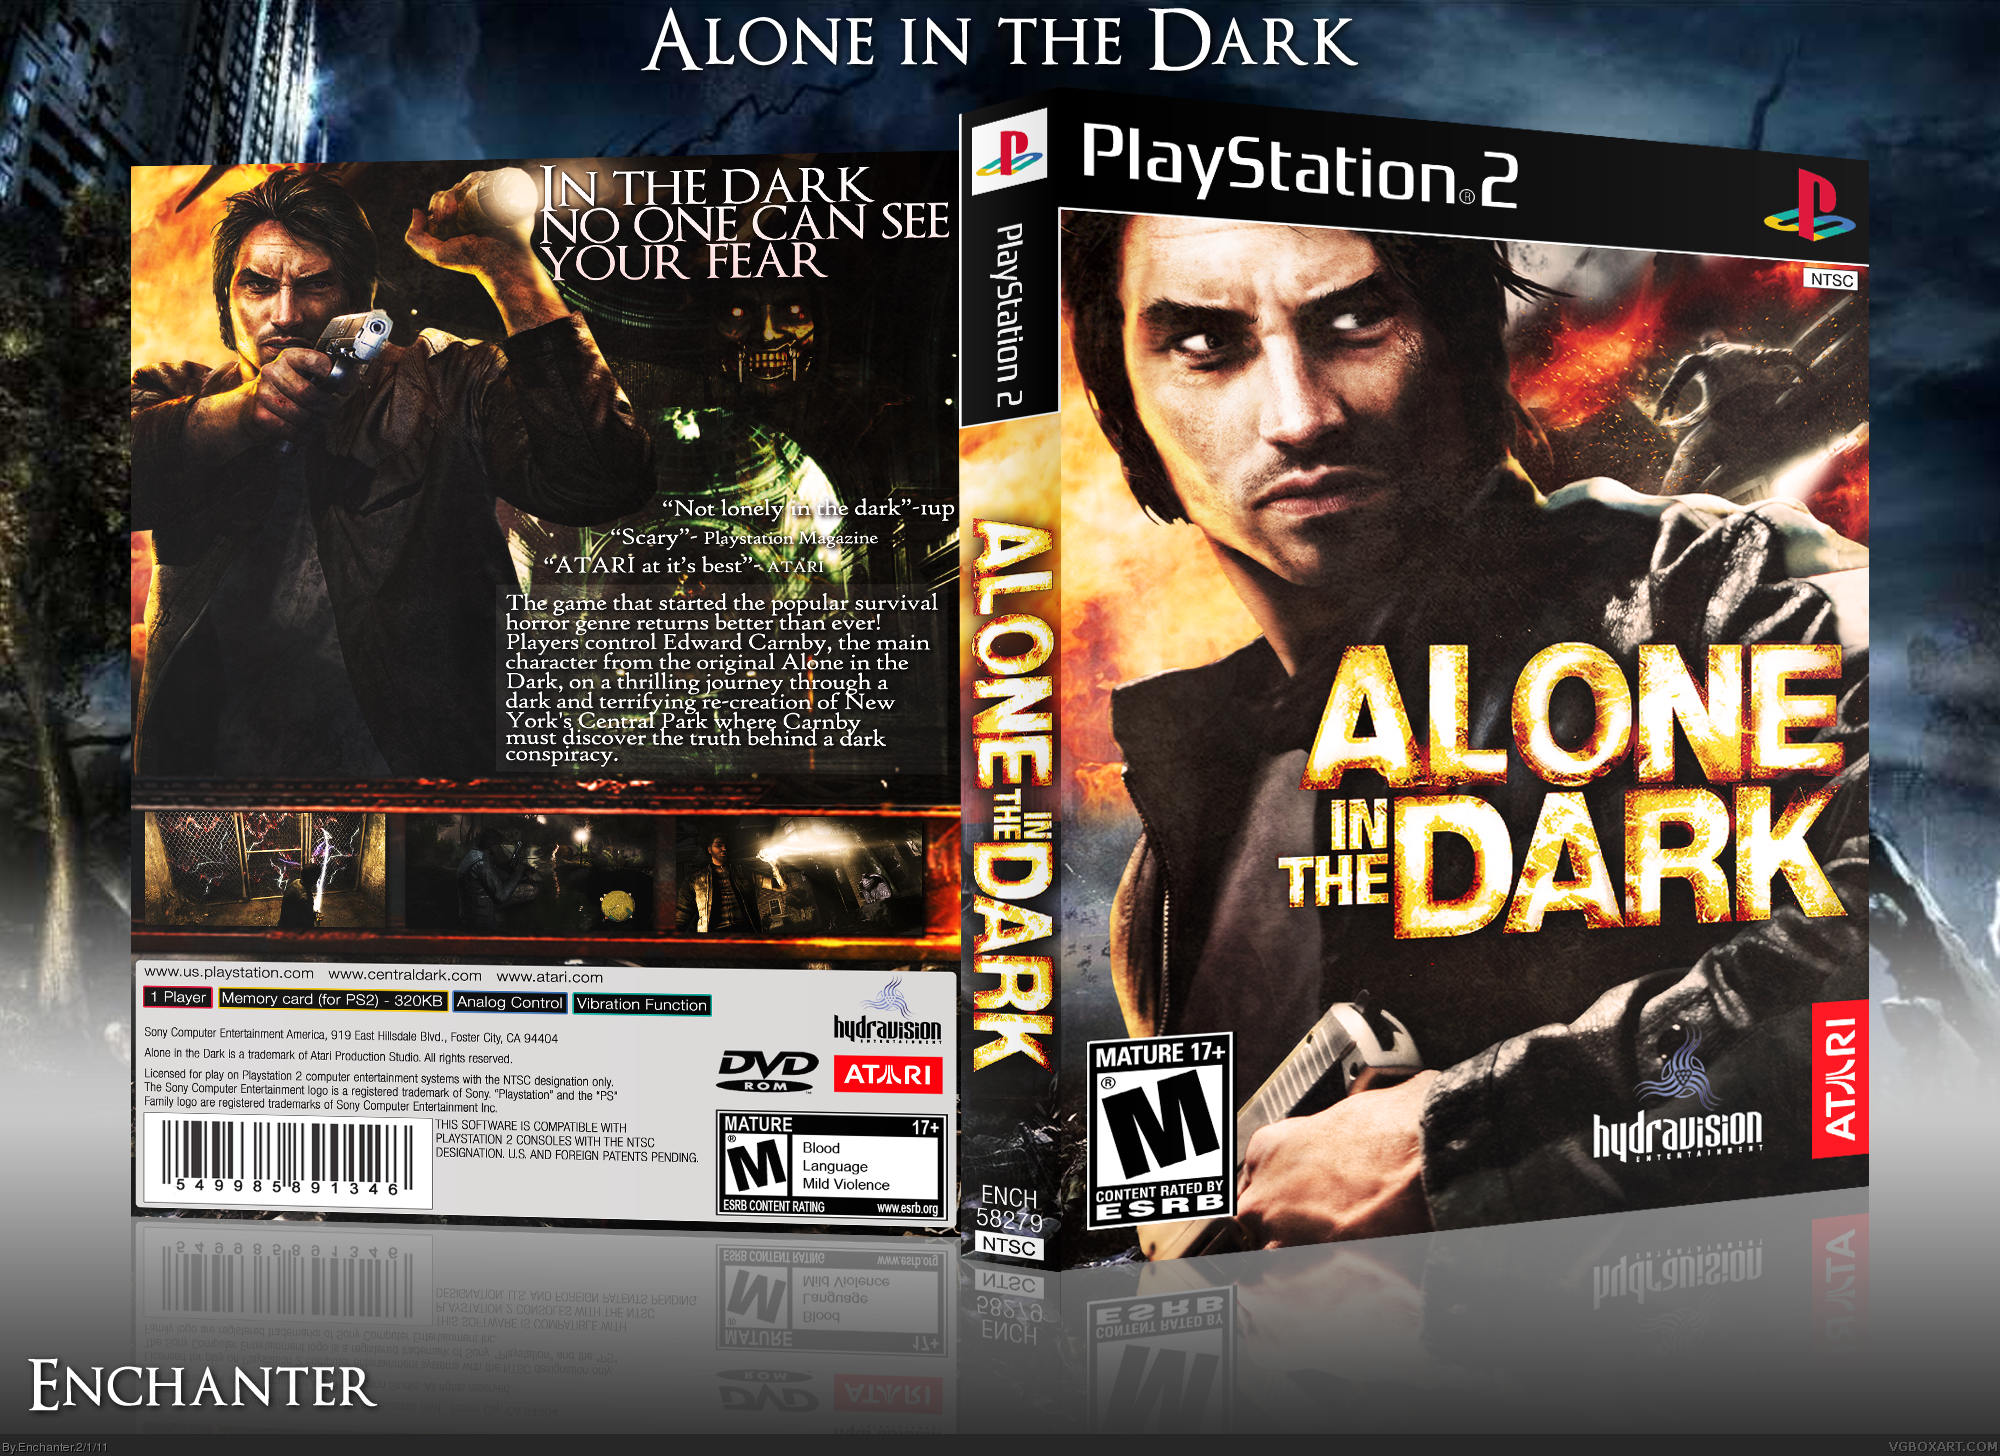 Alone in the dark ps4. Alone in the Dark 4 ps2 коробка. Alone in the Dark 2008 Boxart. Alone in the Dark ps2 обложка. Alon in the Dark на плейстейшен 2.